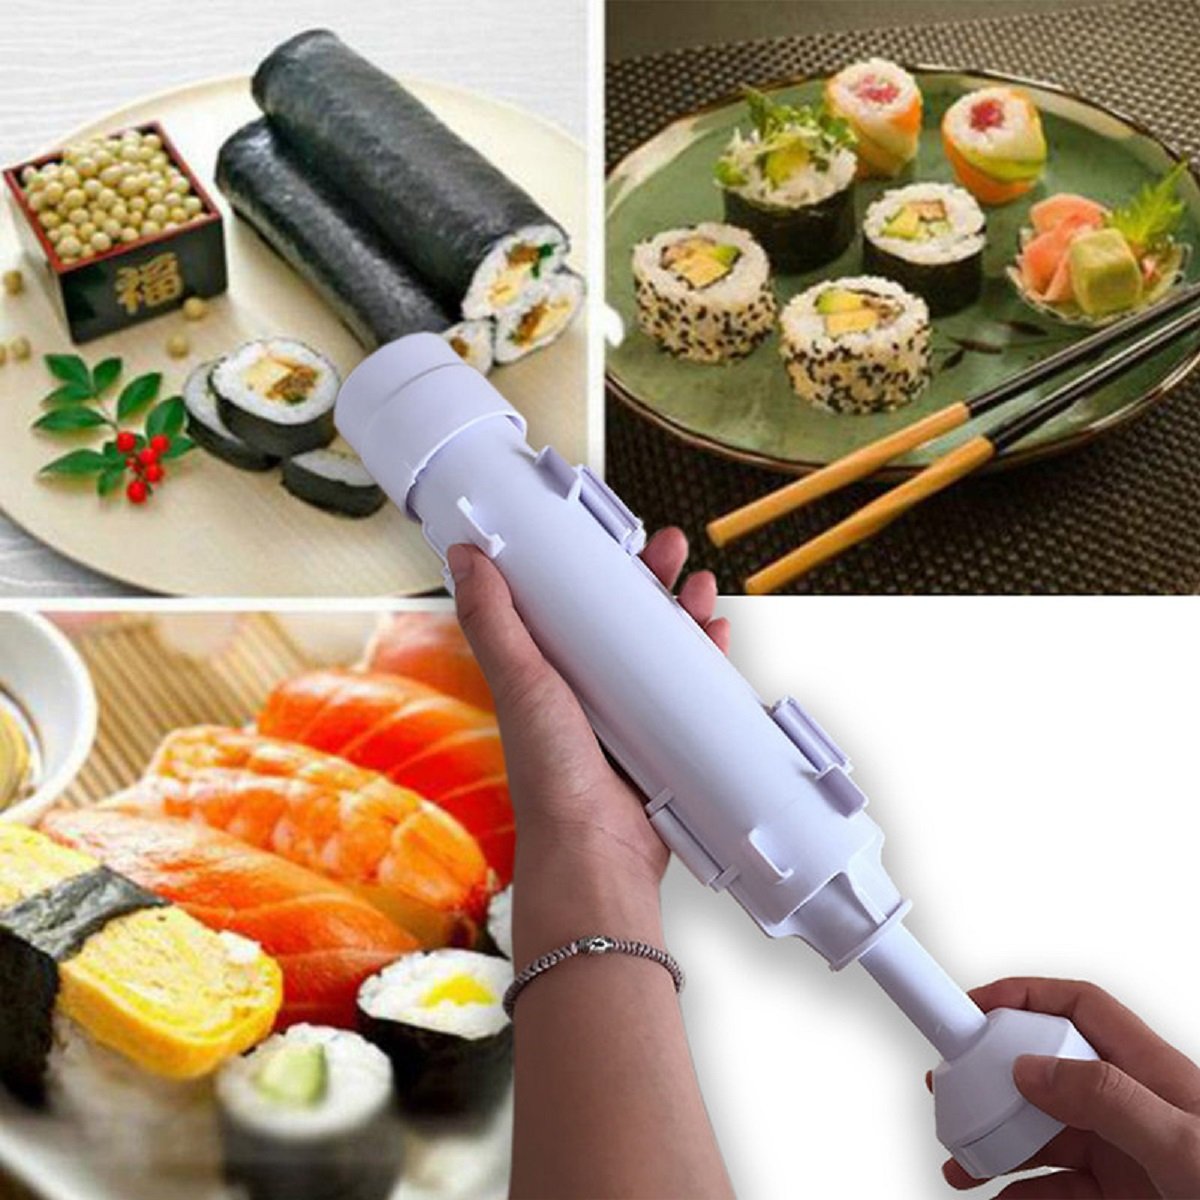 Sushi Rolling Making Tool Kit - 2pcs